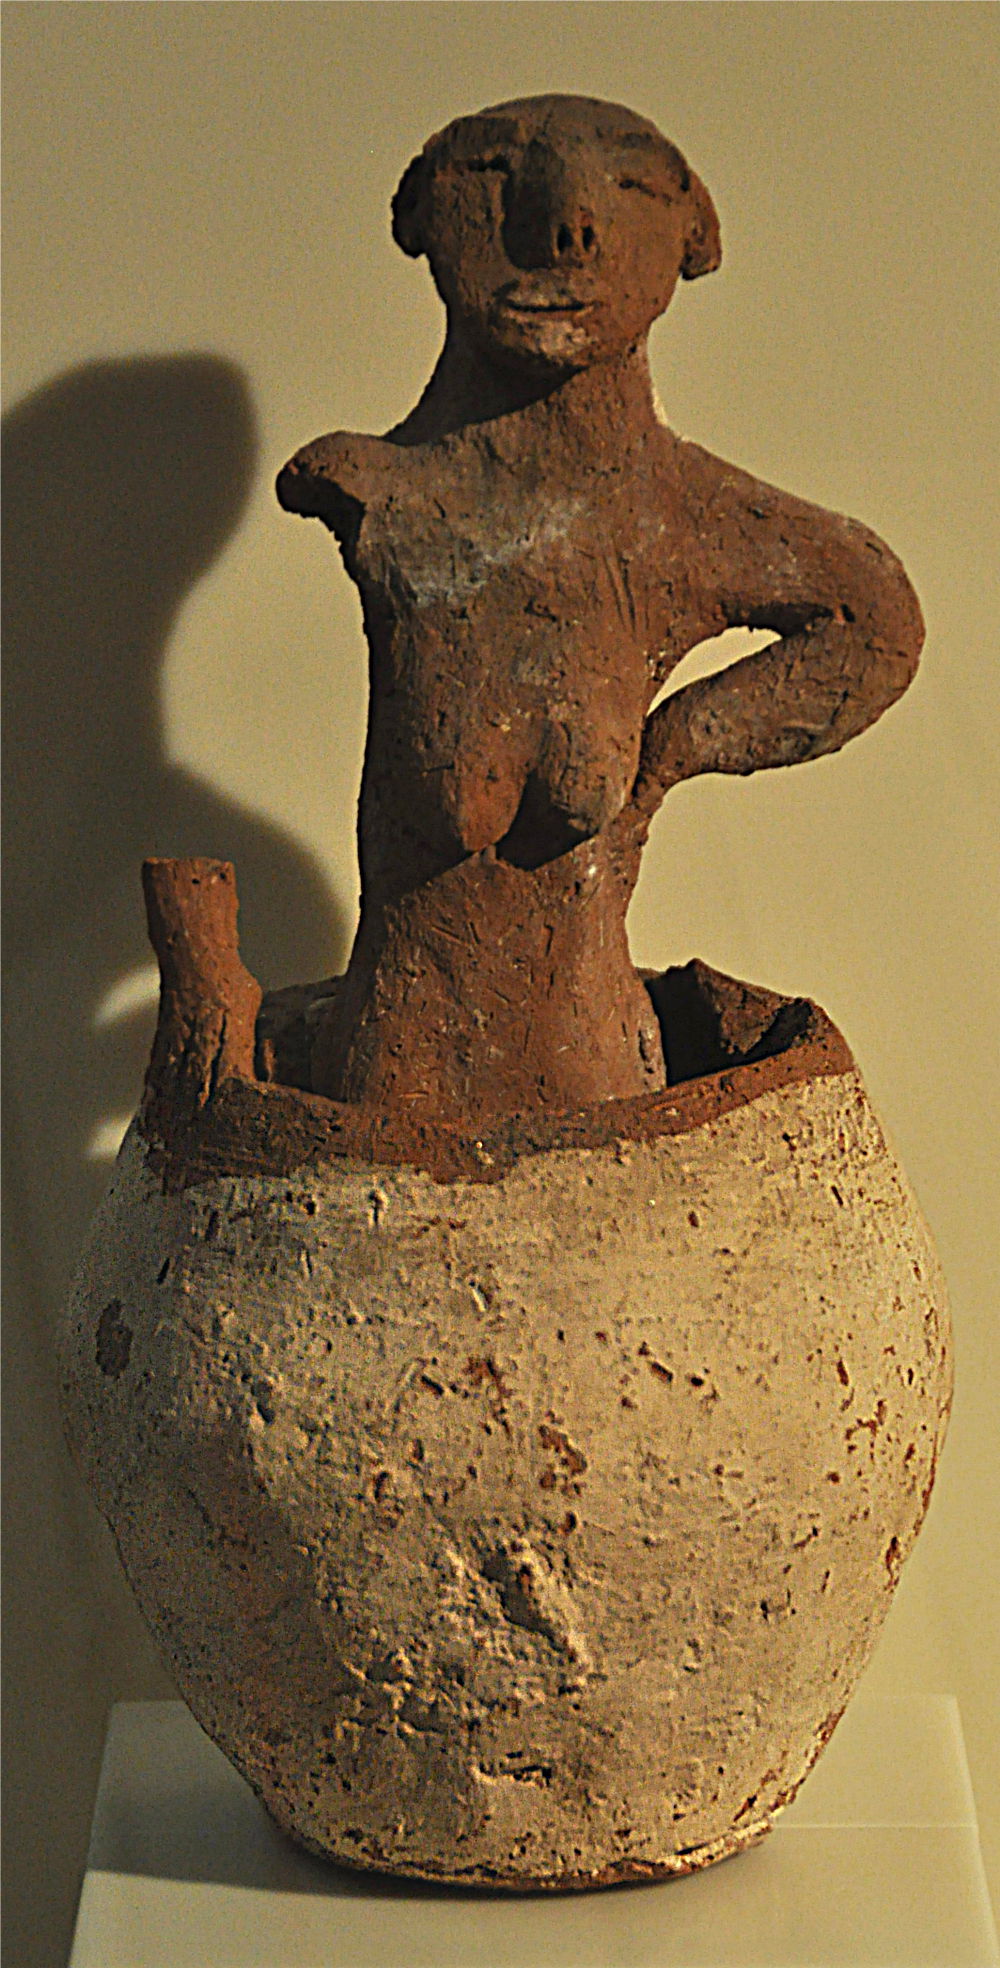 Figurine en argile d'une femme brassant avec ses pieds la maishe pour faire de la bière. Naqada II, 3700-3200 BC